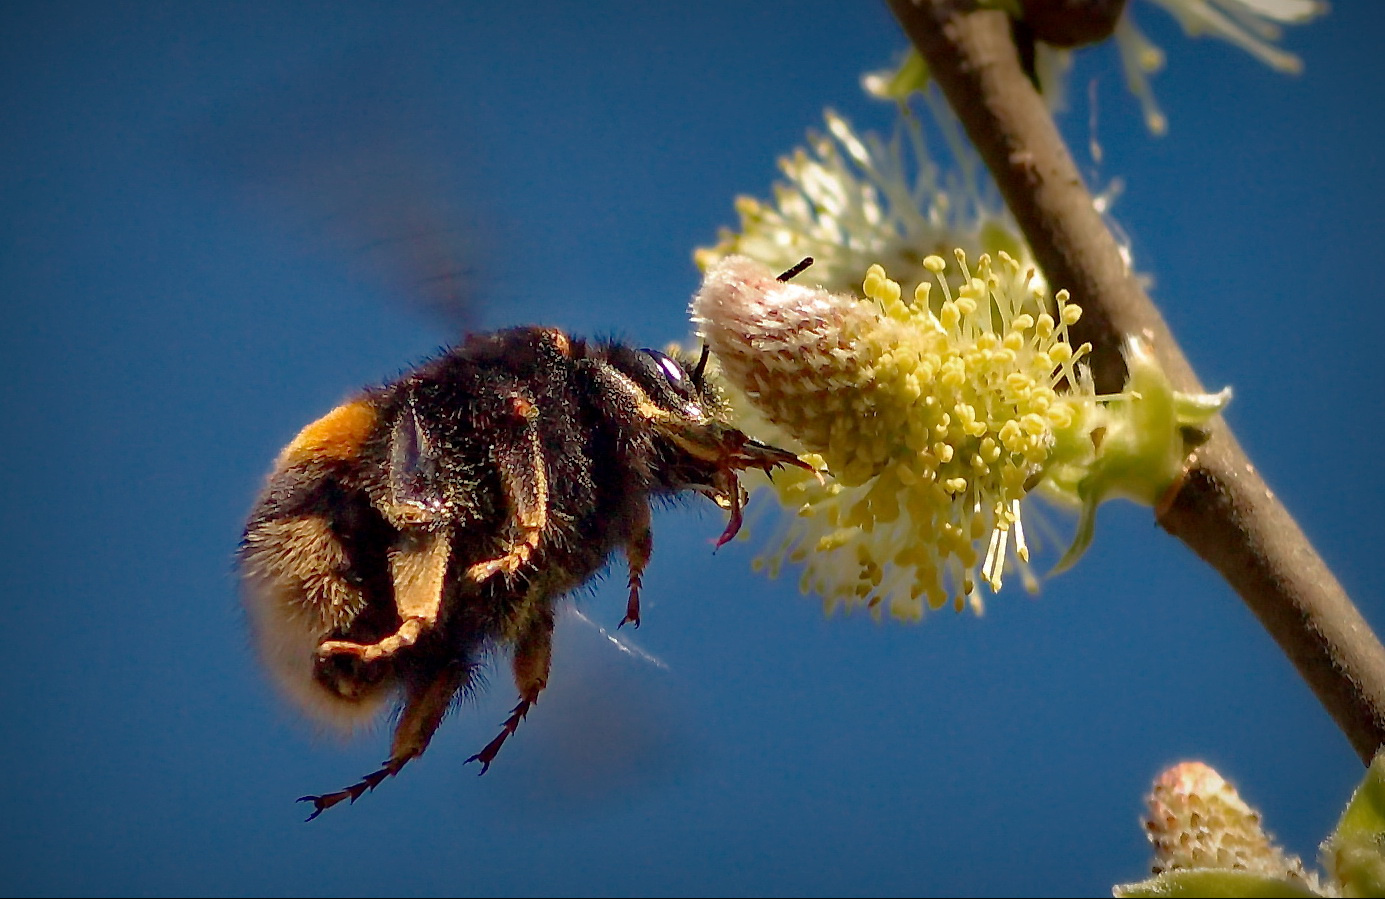 Летающий мишка шмель цветок пыльца еда полёт макро природа Кольцов Юрий Юрьевич juriy68